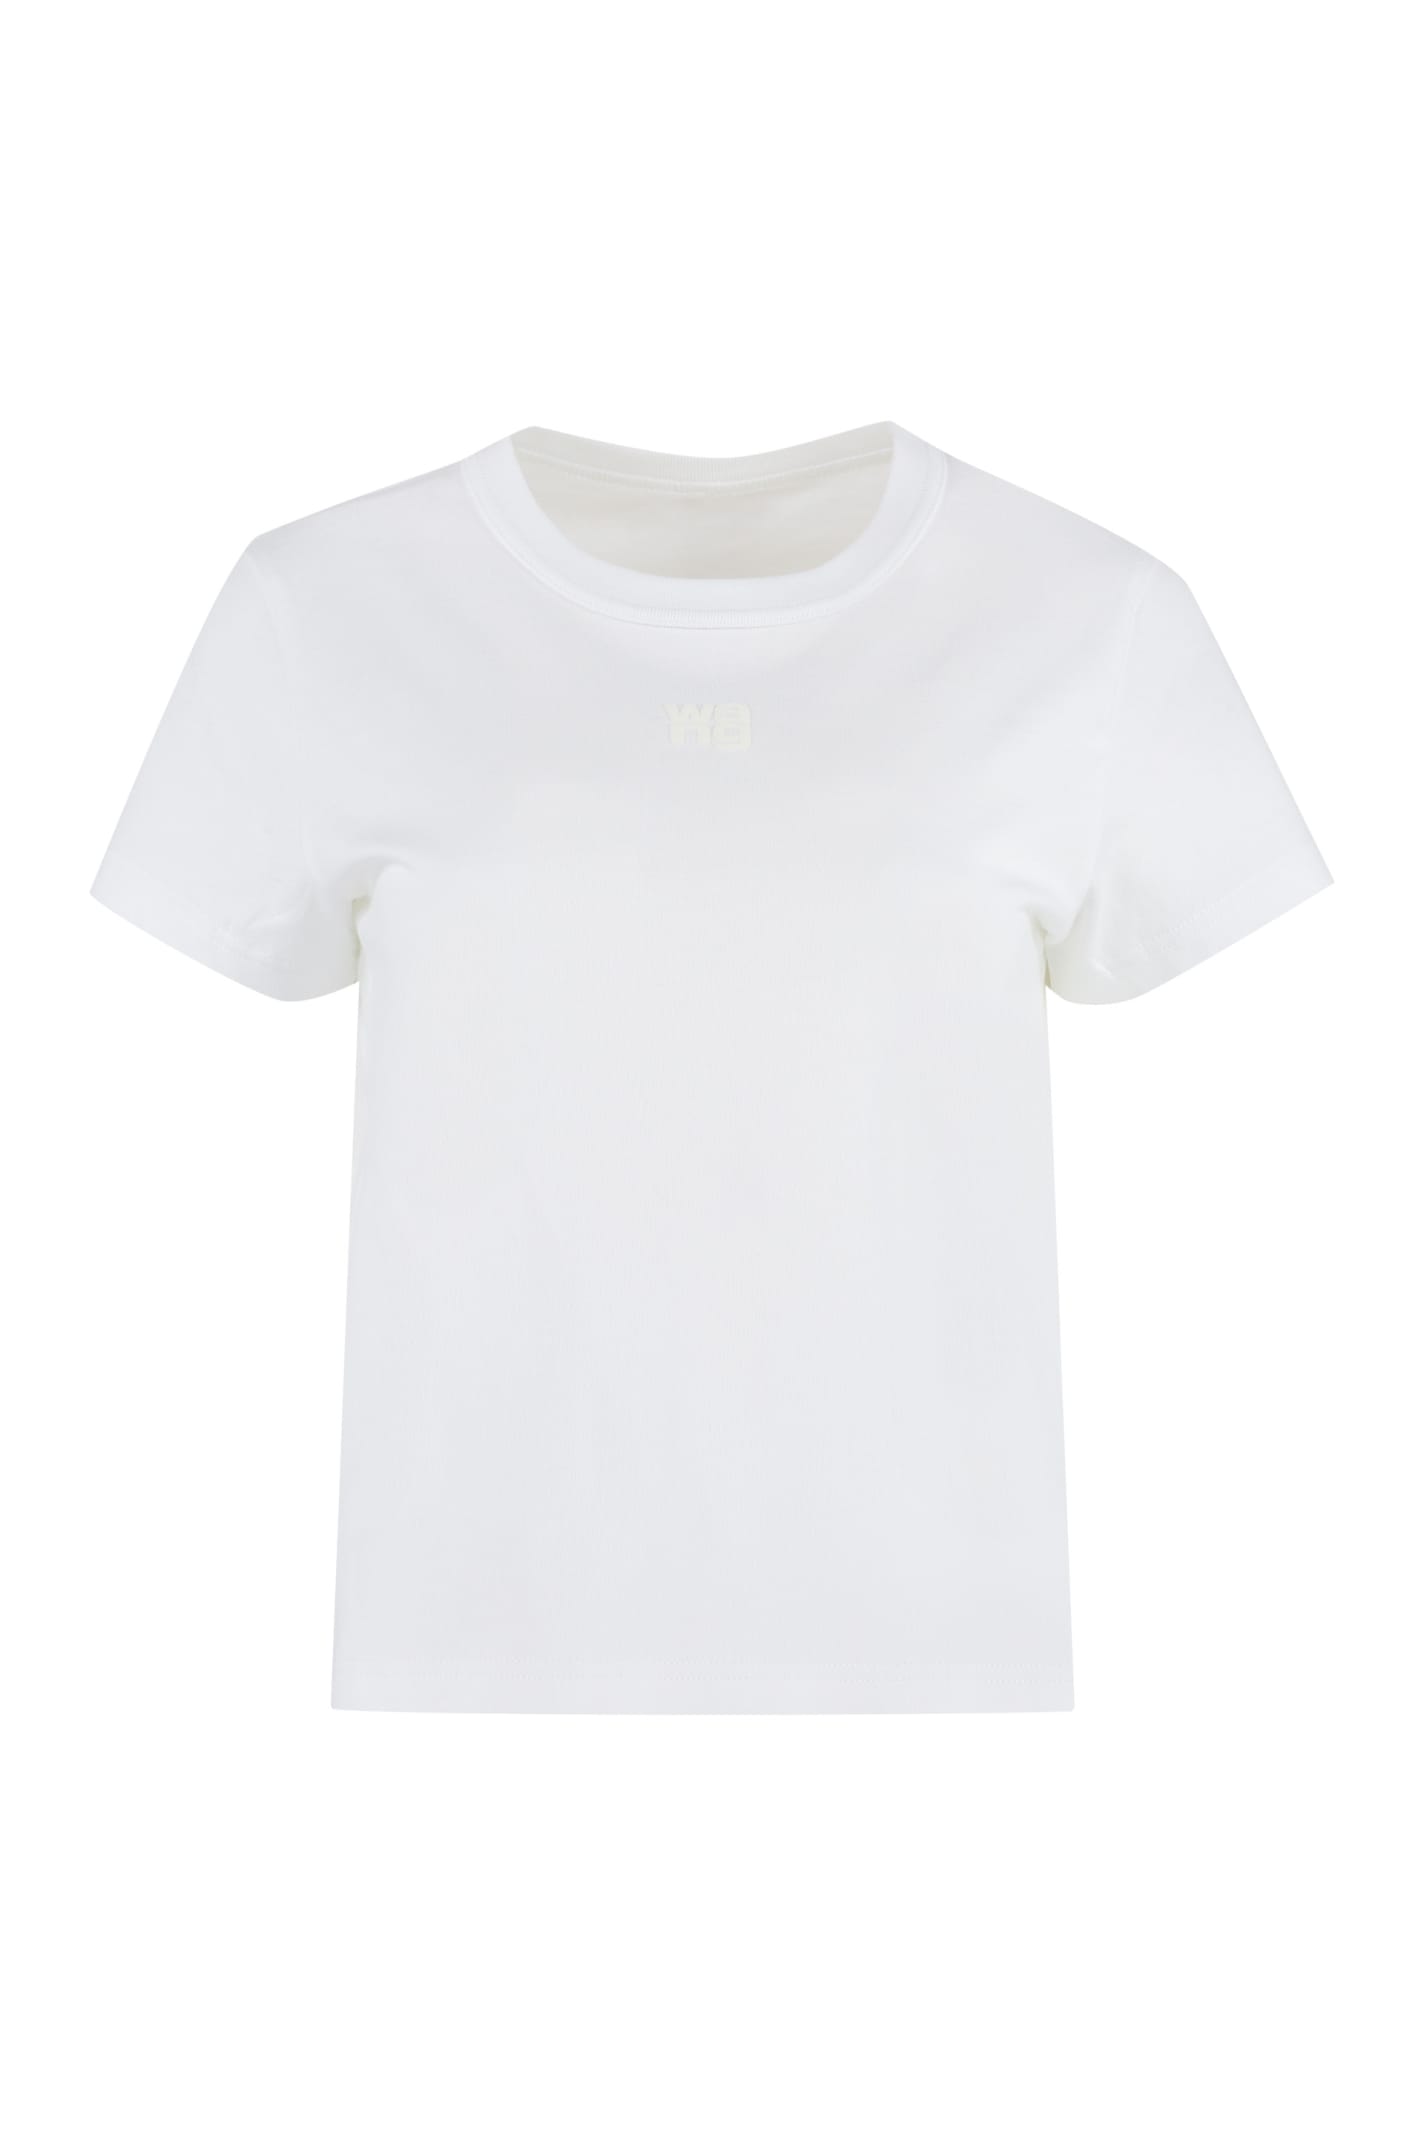 Alexander Wang Logo Cotton T-shirt